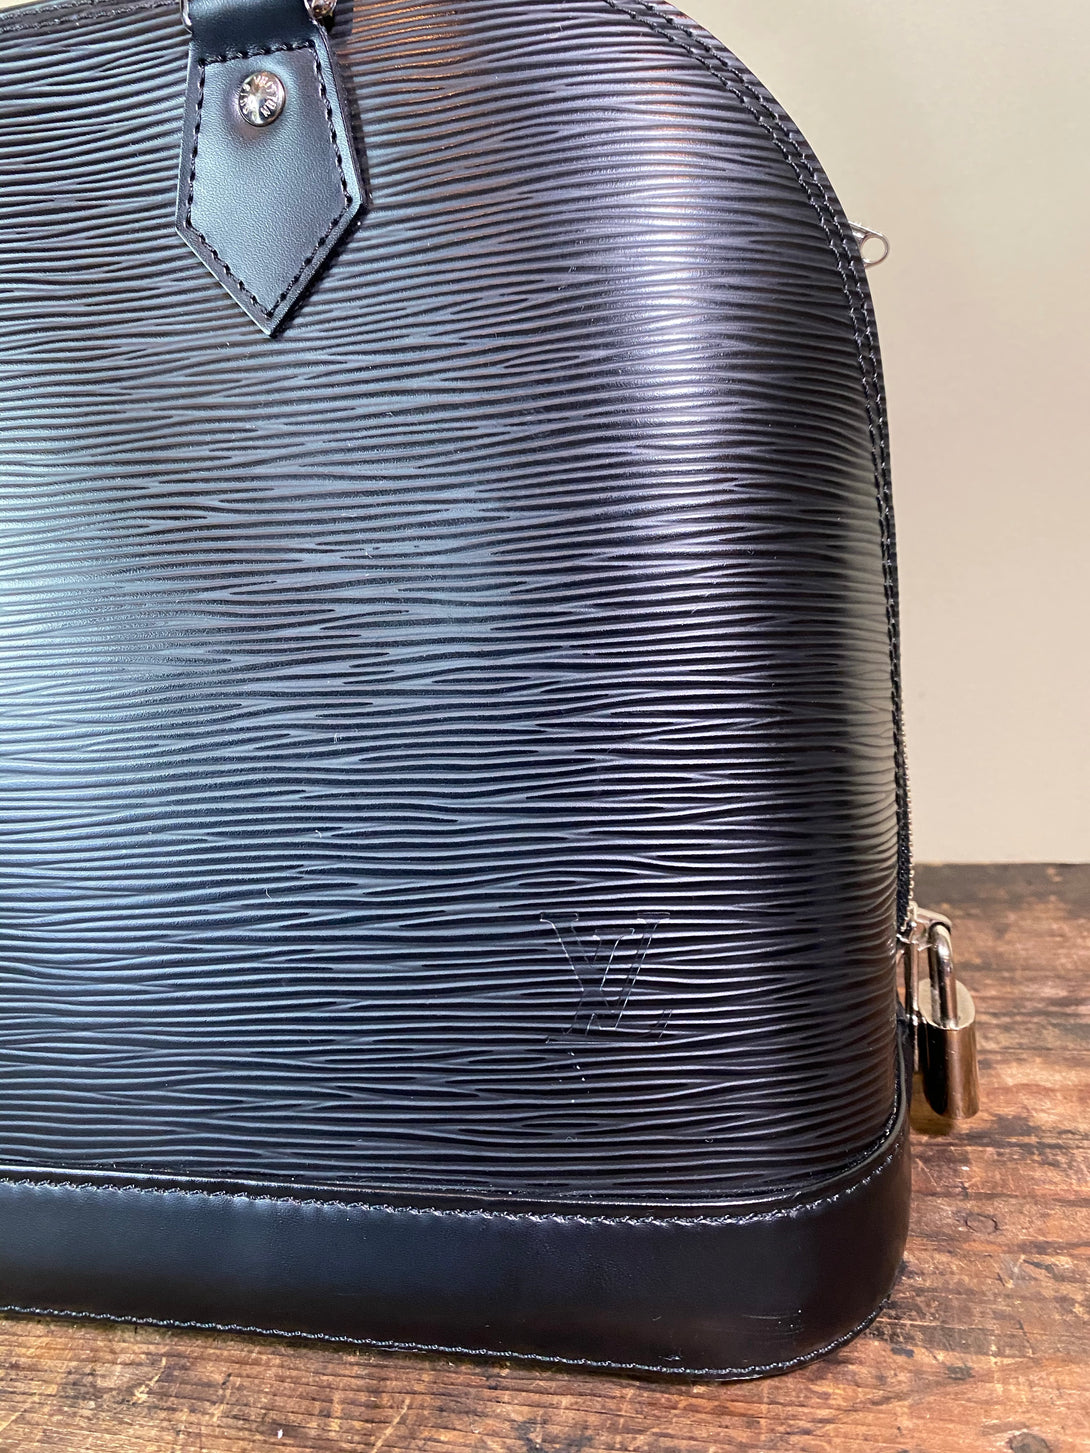 Louis Vuitton Black Epi Leather "Alma" PM Tote - Siopaella Designer Exchange